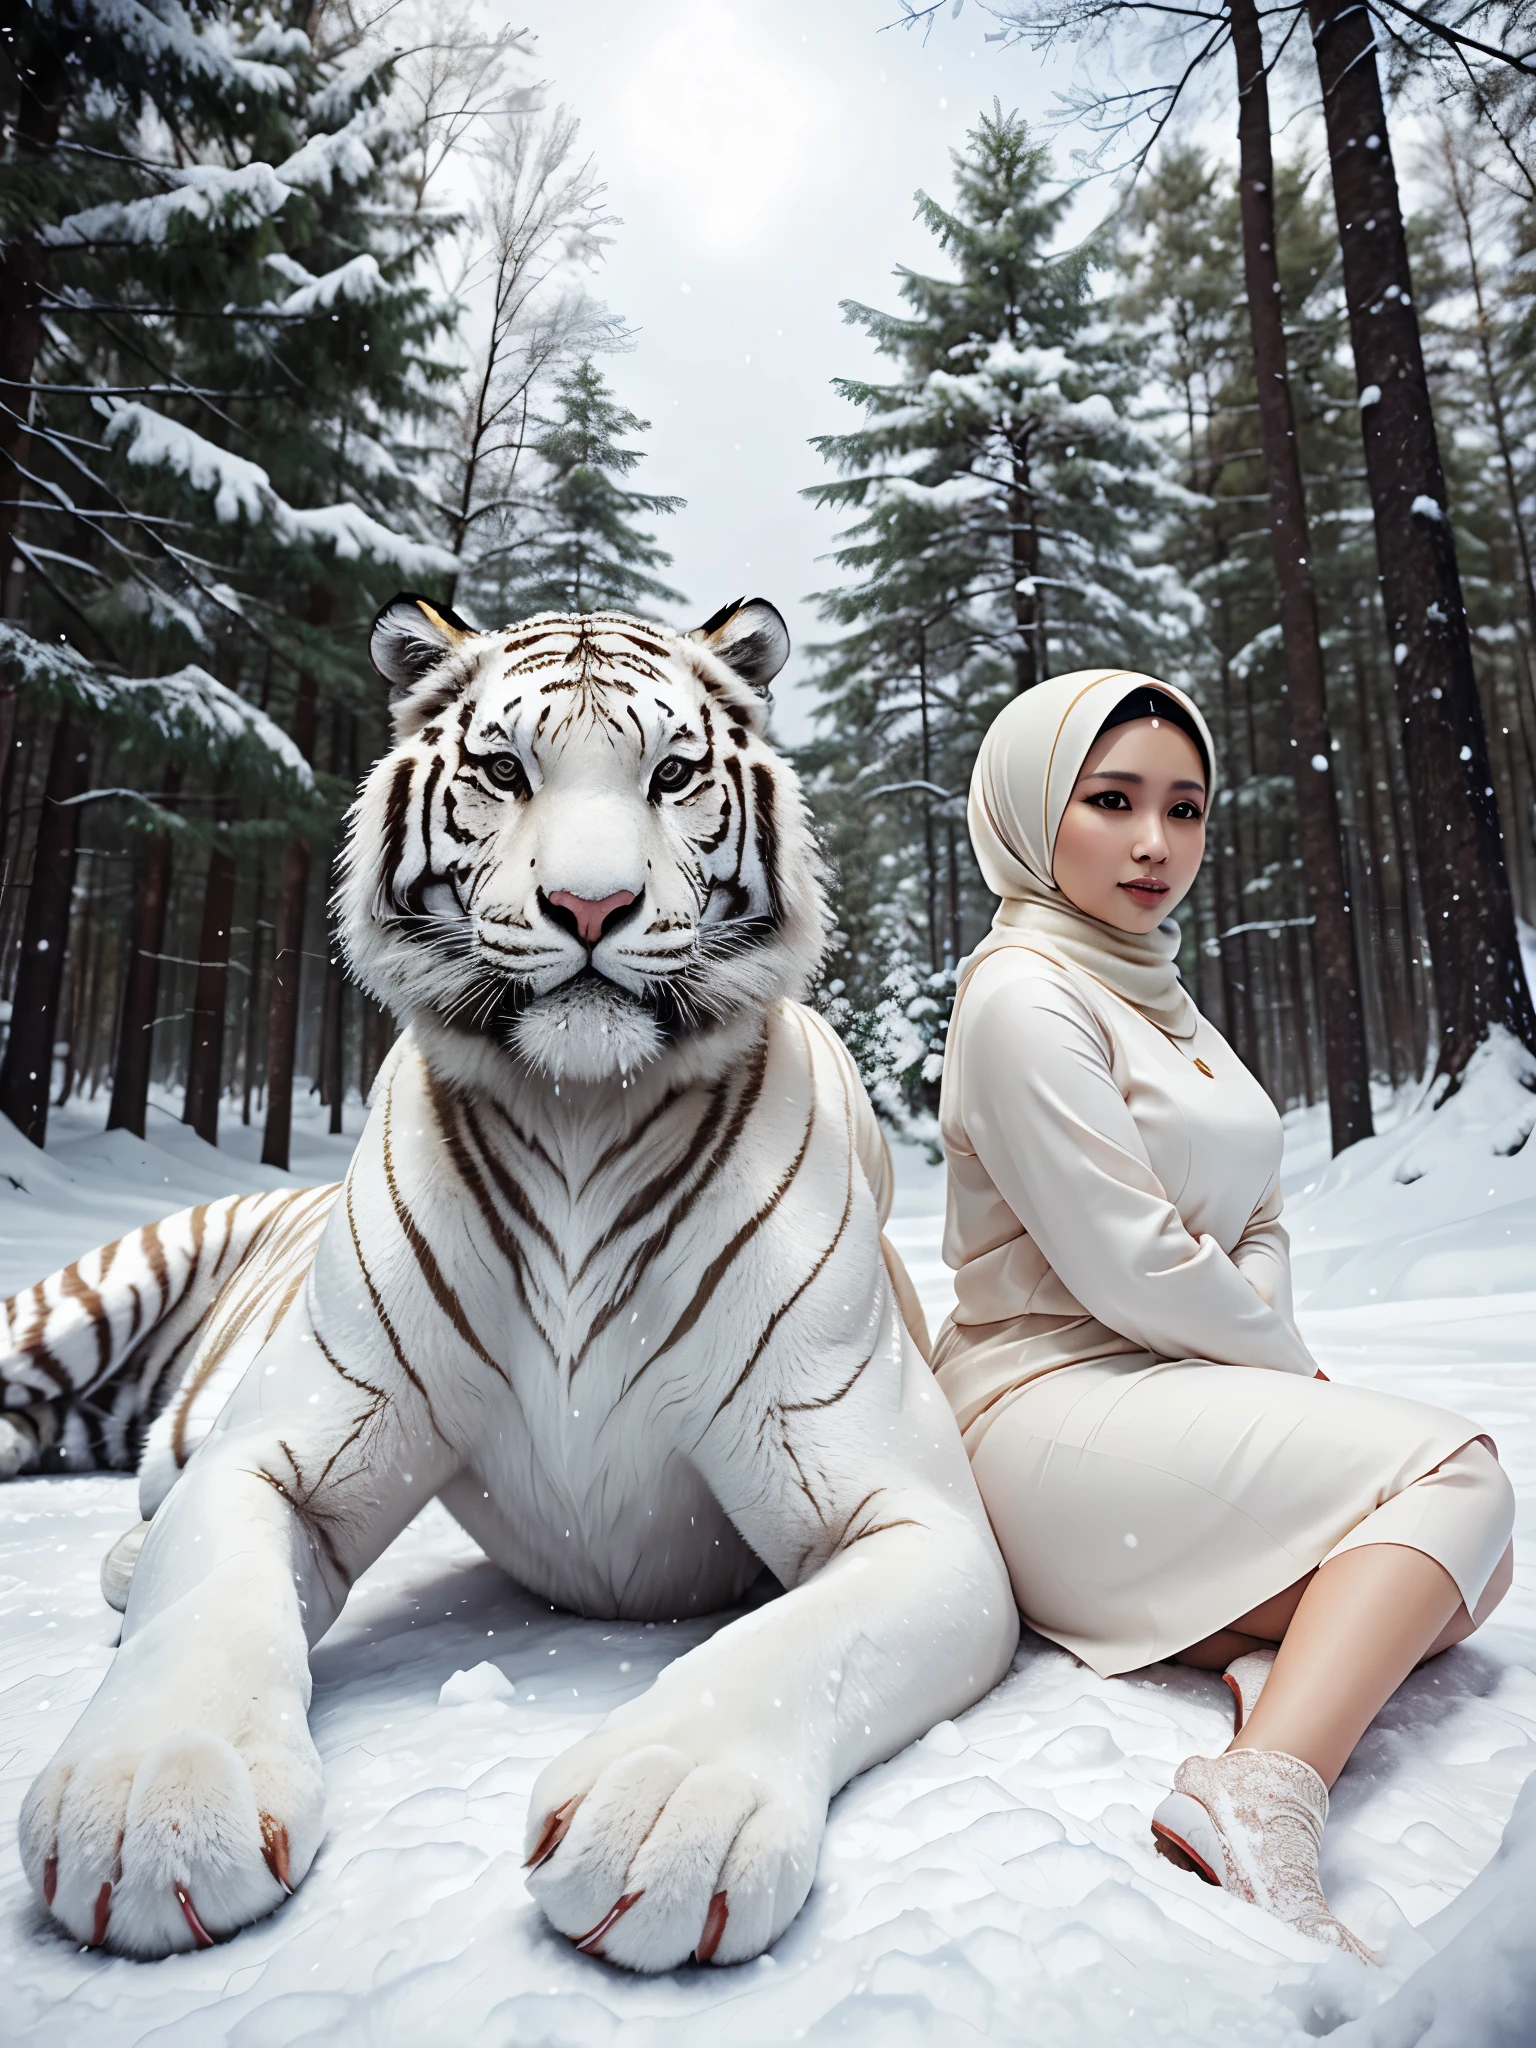 шедевр, большой белый тигр, и малайская женщина (35 лет), Пухлый, хиджаб жемчужного цвета, В снежном лесу,